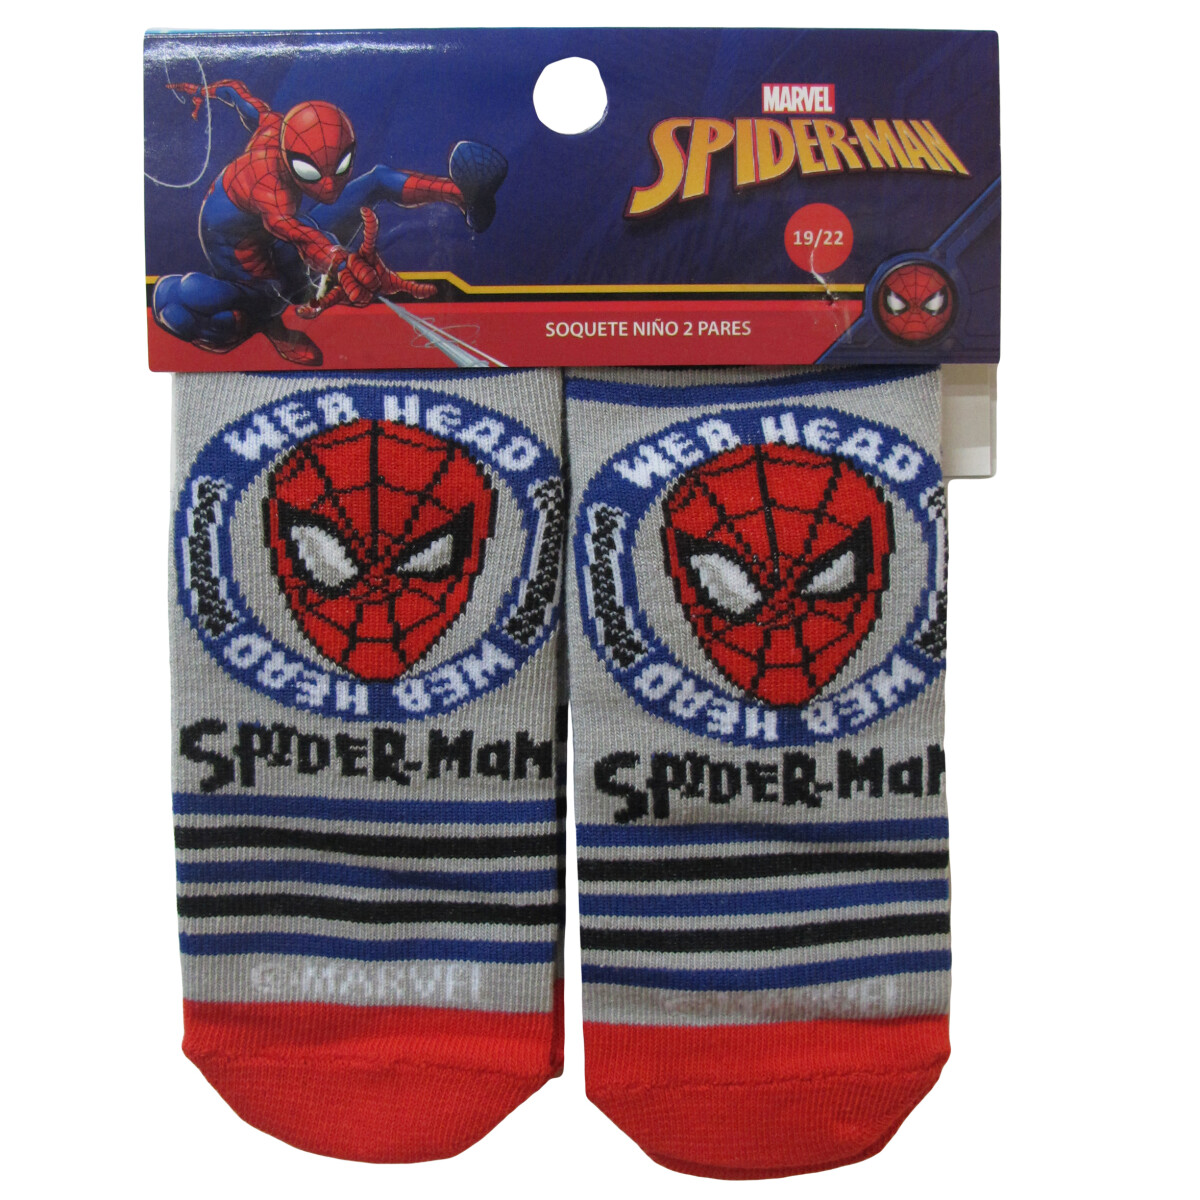 Medias x2 Spider Man Marvel - Gris/Rojo/Negro 